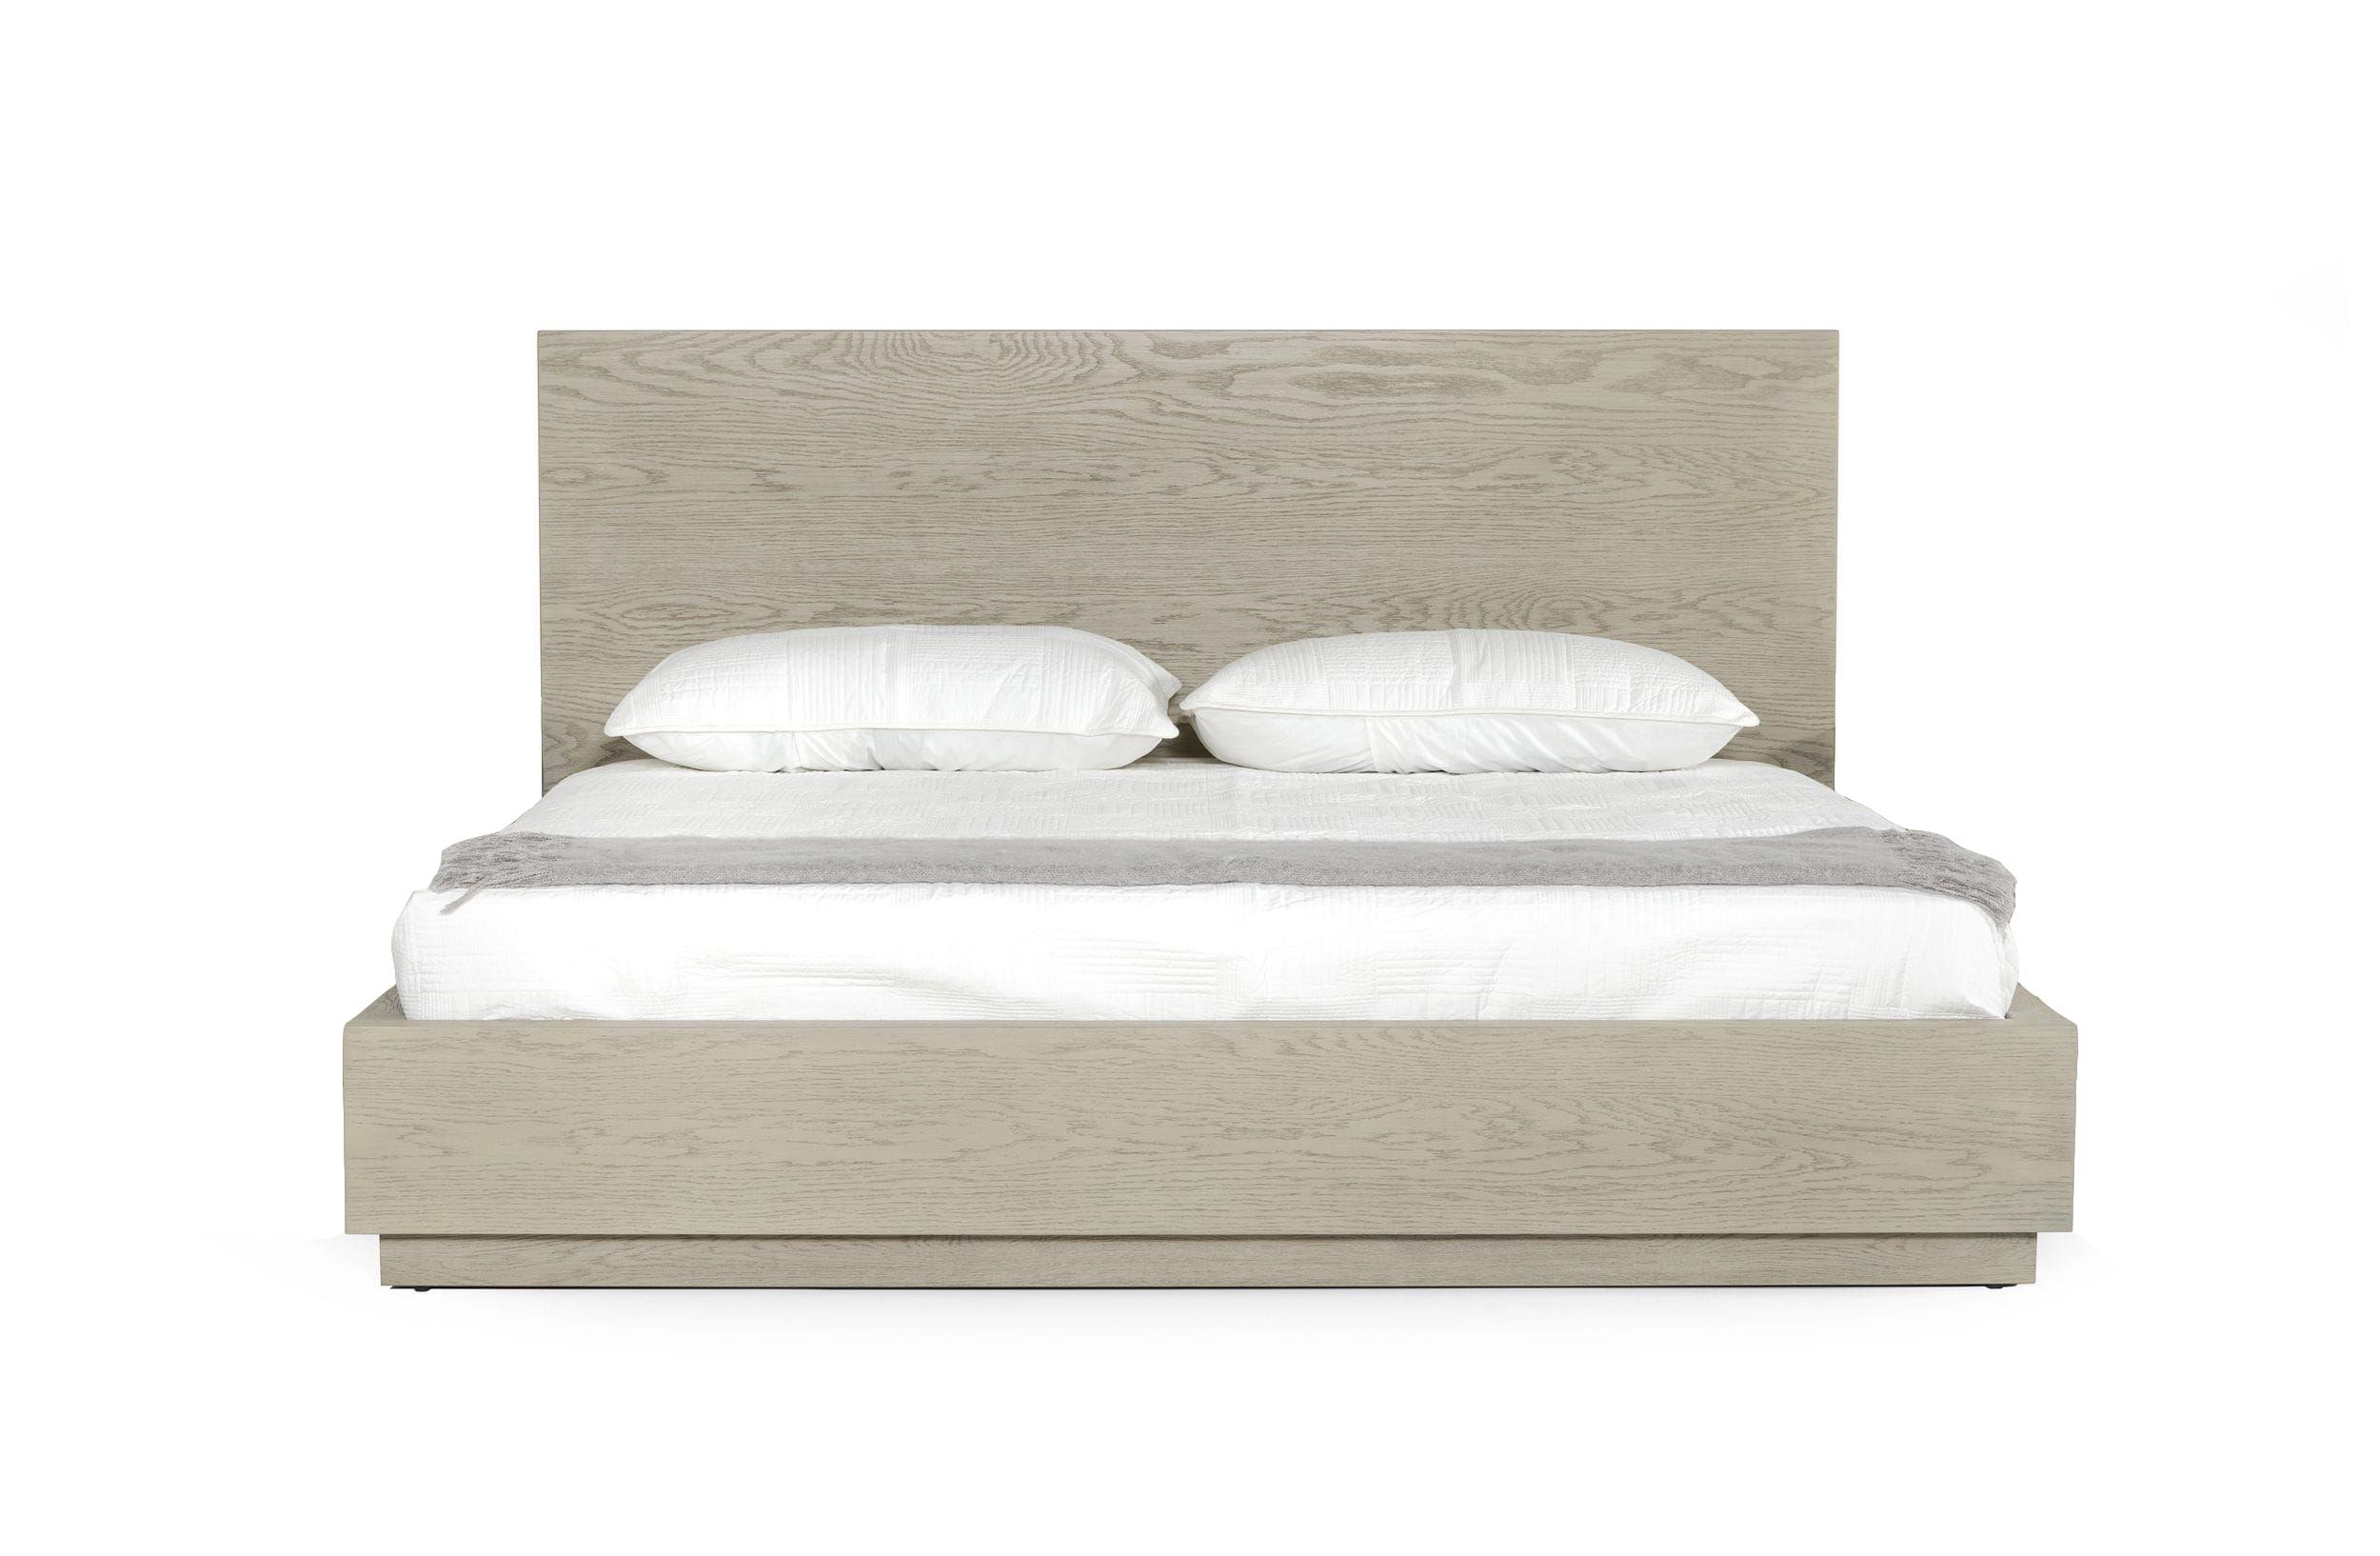 

    
Oak & Silver King Size Panel Bed by VIG Modrest Samson
